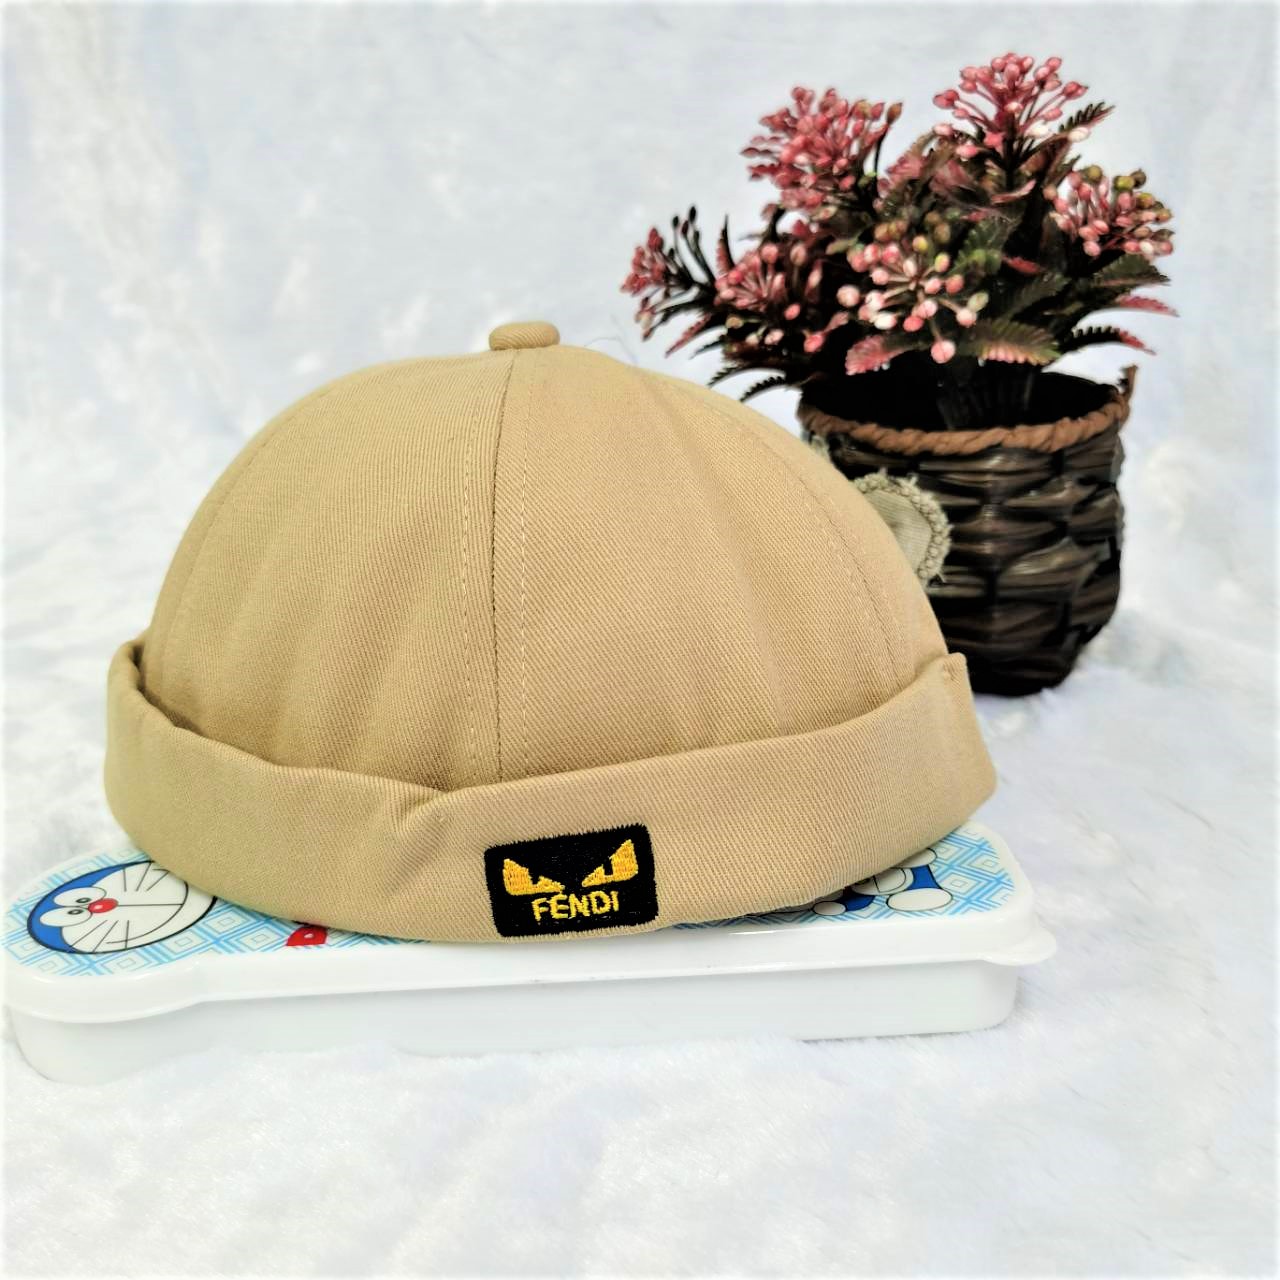 หมวกmiki หมวกวินเทจ หมวกแฟชั่น หมวกผู้ชาย หมวกผู้หญิง หมวกไม่มีปีก มีสายรัดปรับขนาด หมวกไบร์ท